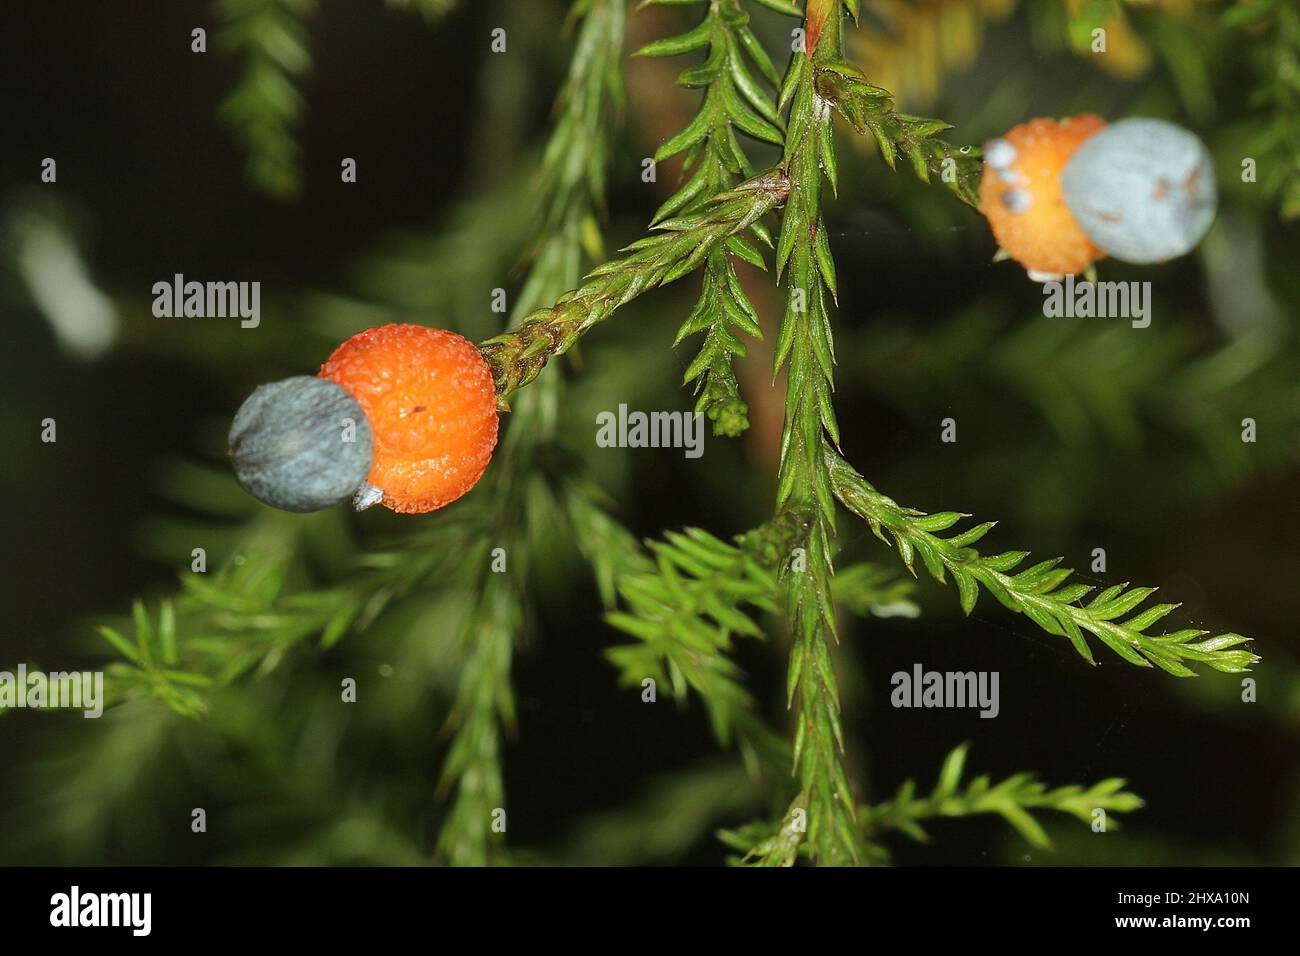 Kahikatea, New Zealand white pine (Dacrycarpus dacryoides) fruiting structures Stock Photo